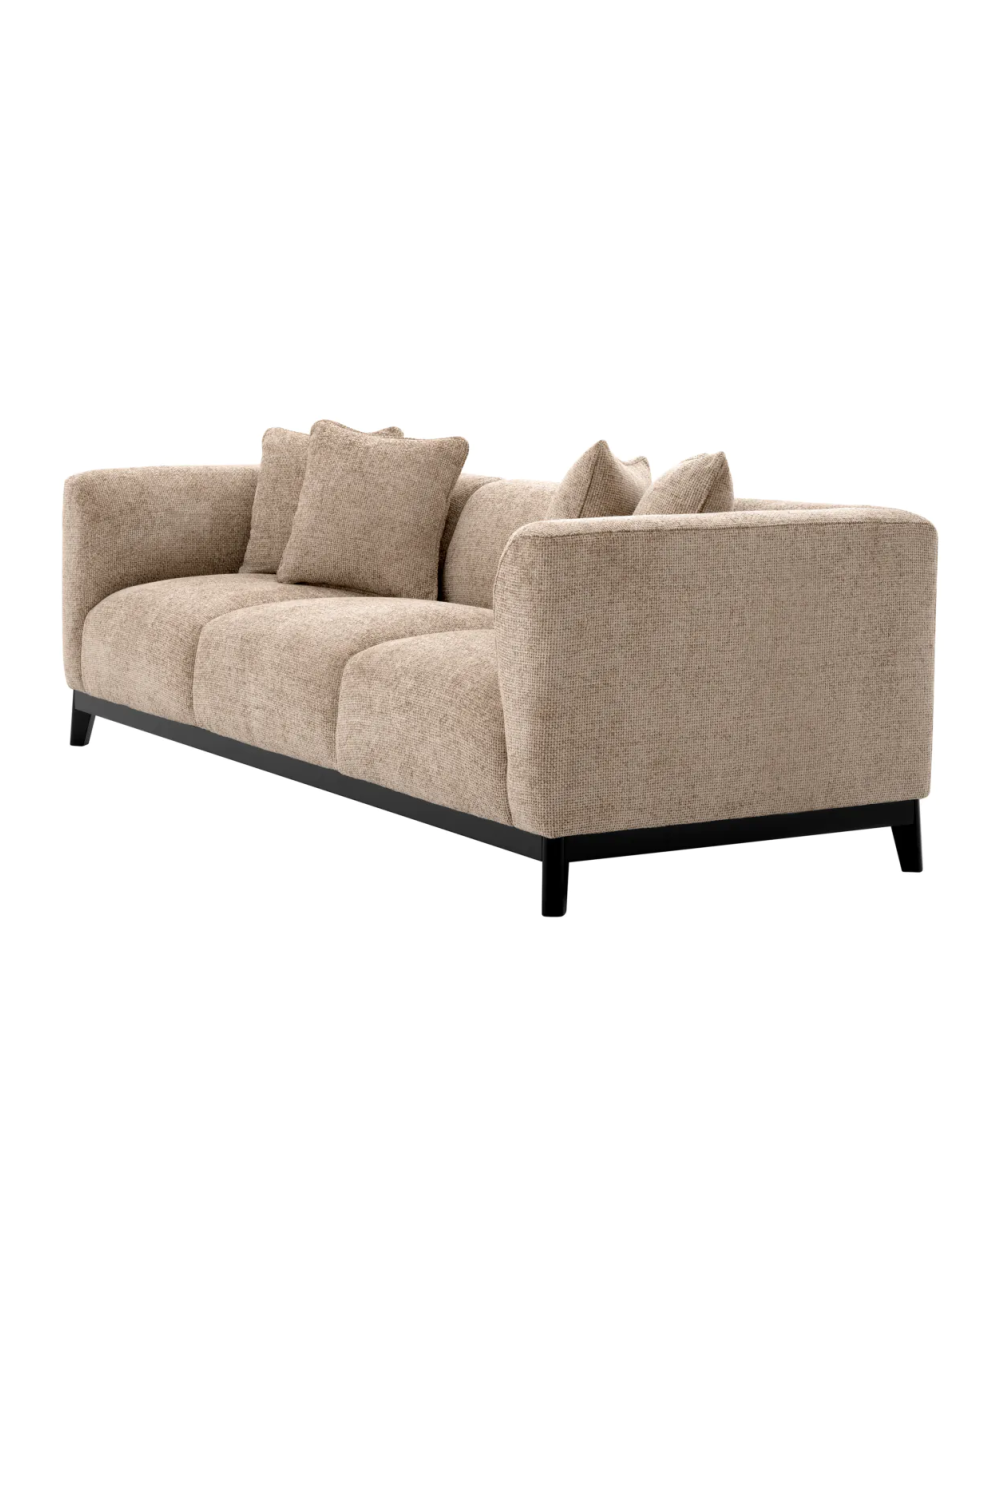 Beige Modern Sofa | Eichholtz Corso | Oroa.com